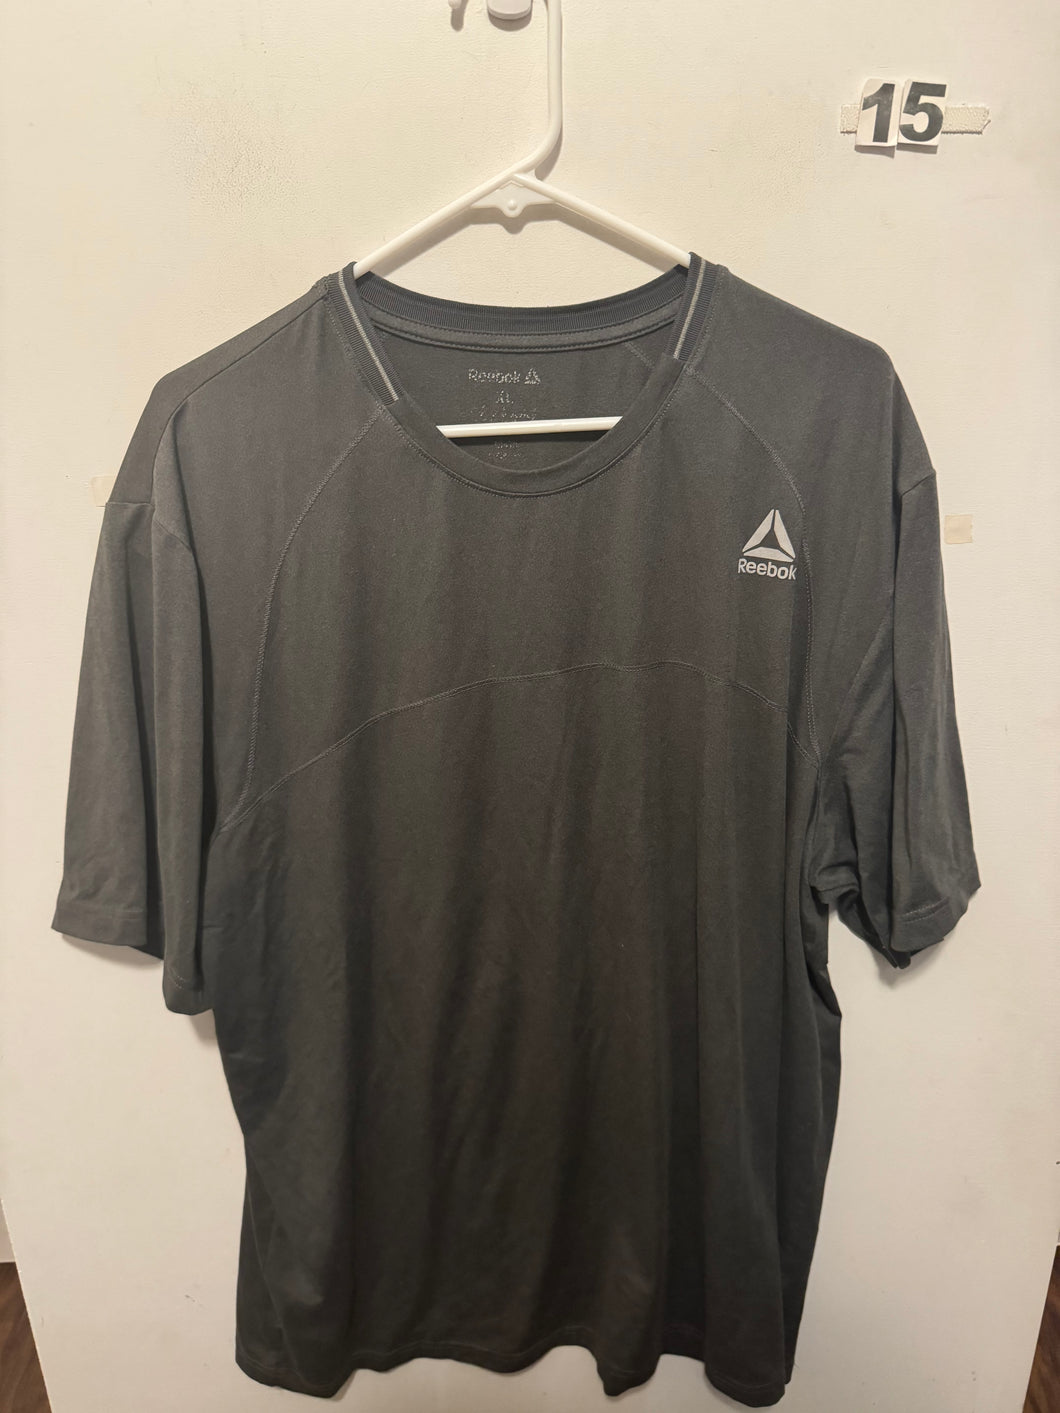 Men’s XL Reebok Shirt